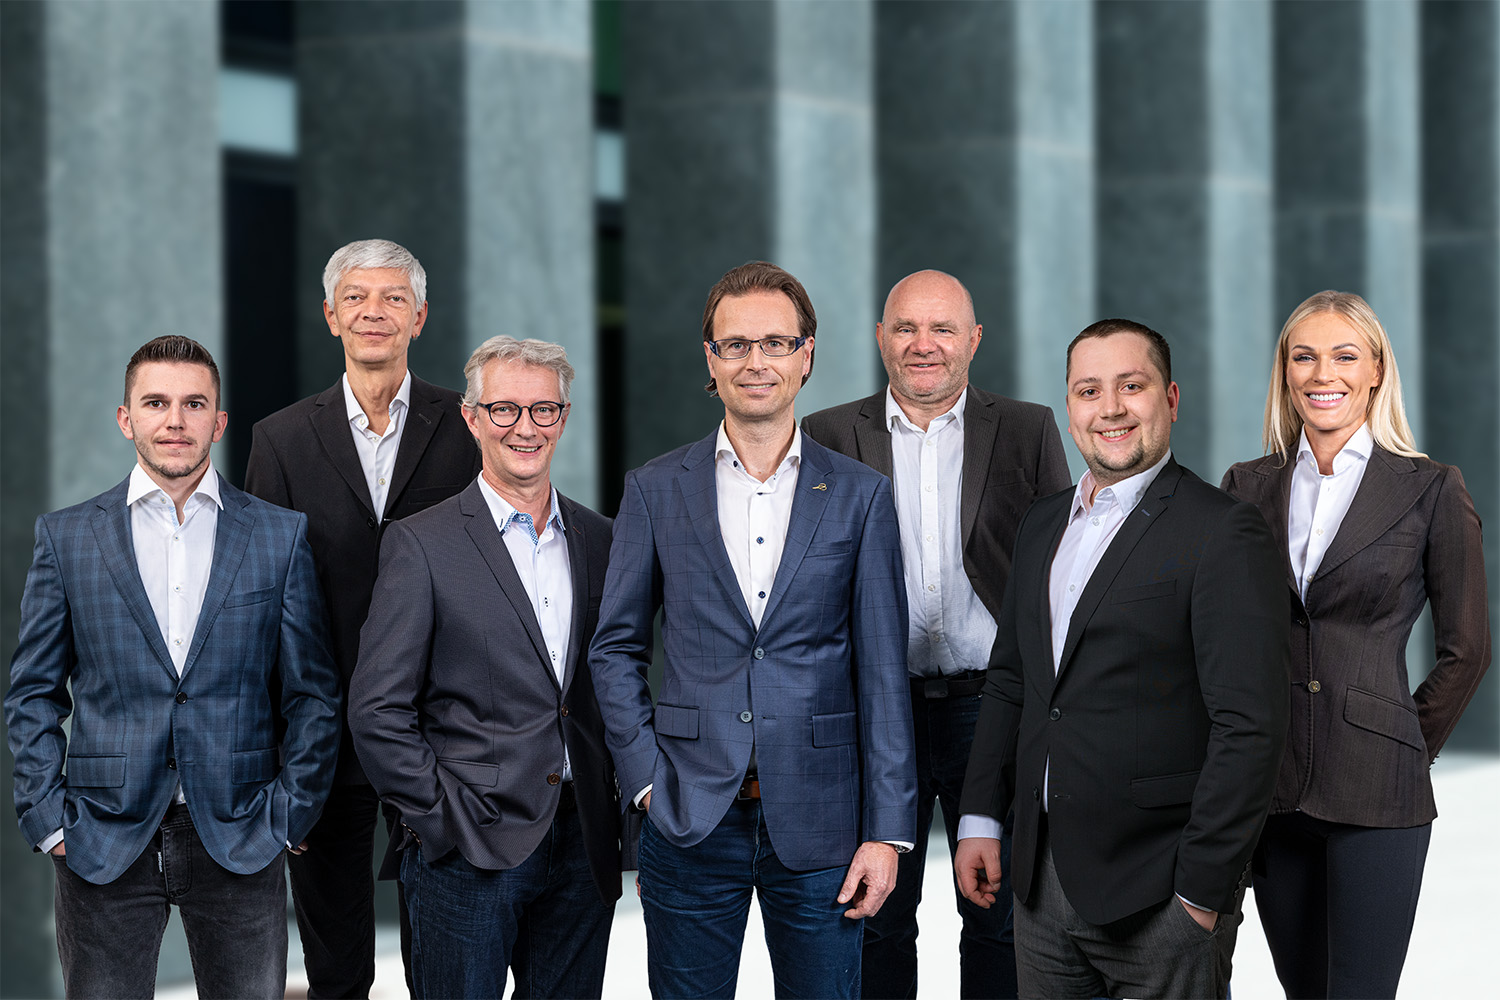 Sieben Mitglieder des Unternehmens Hemutec posieren für ein gemeinsames Teamfoto. In der ersten Reihe stehen vier Personen, darunter eine Frau, und in der zweiten Reihe drei Männer, alle lächelnd und in formeller Geschäftskleidung.